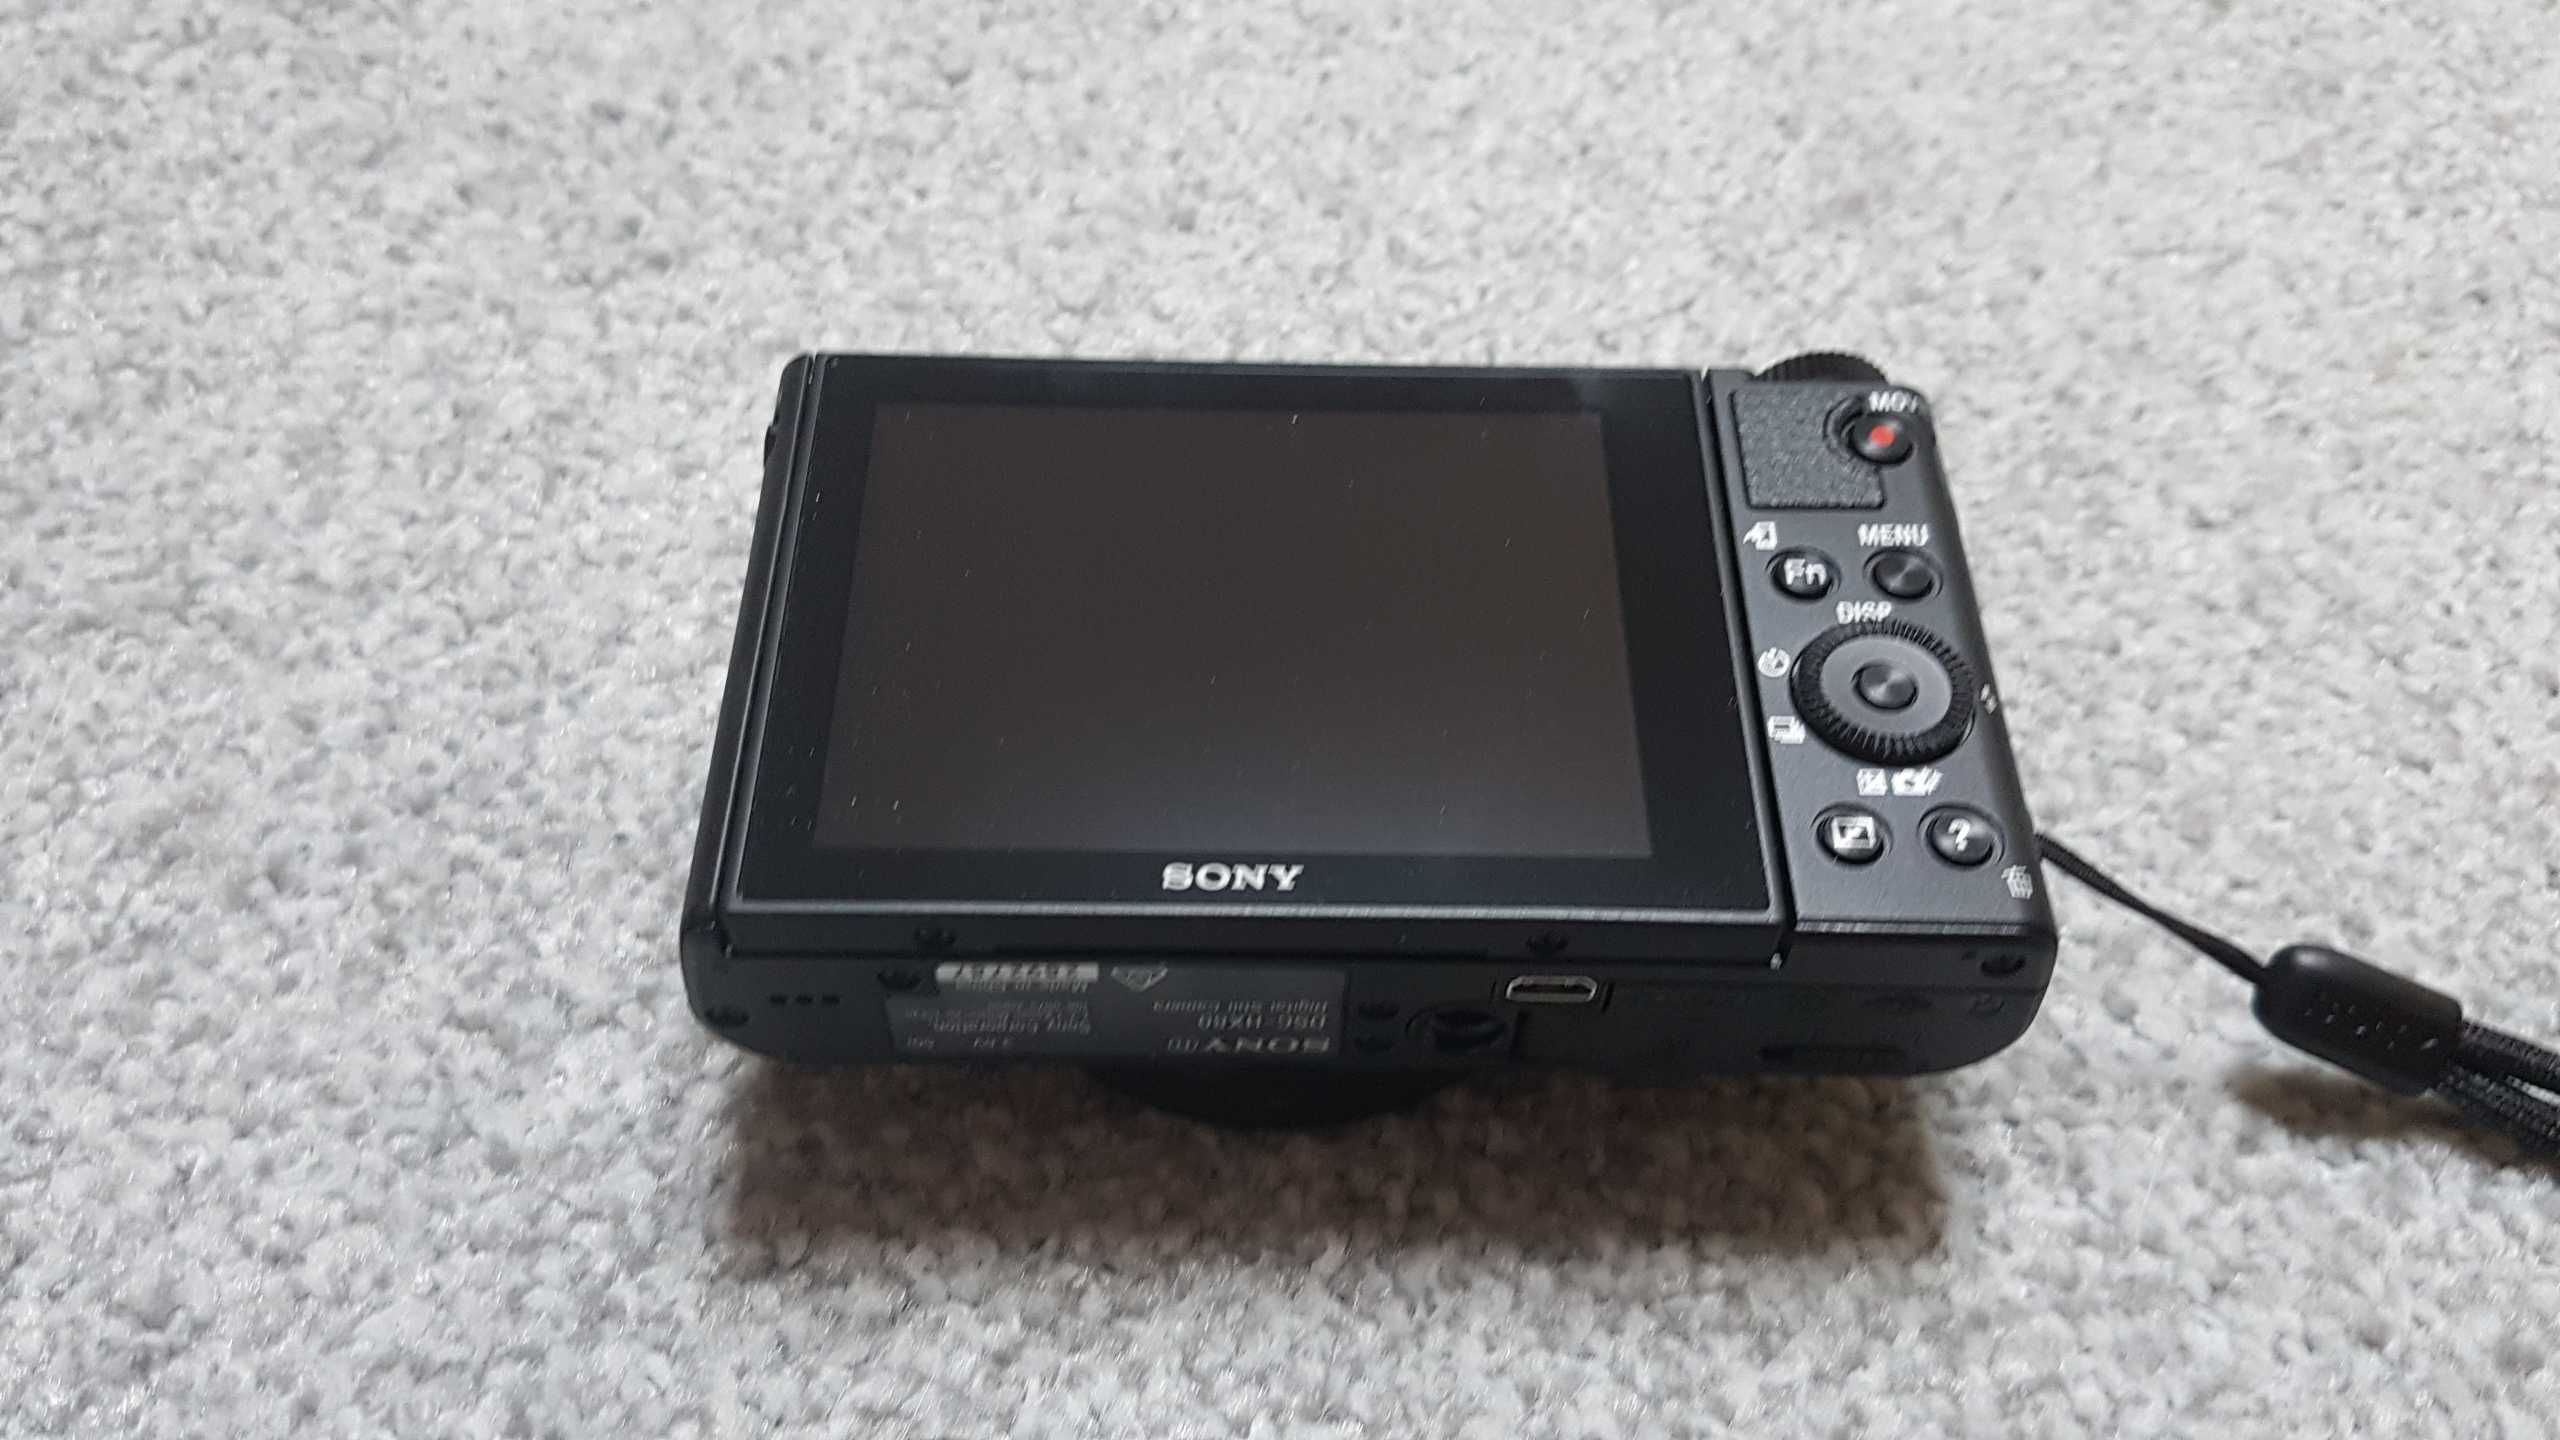 Aparat Sony HX80 - stan idealny - okazja - Szczecin